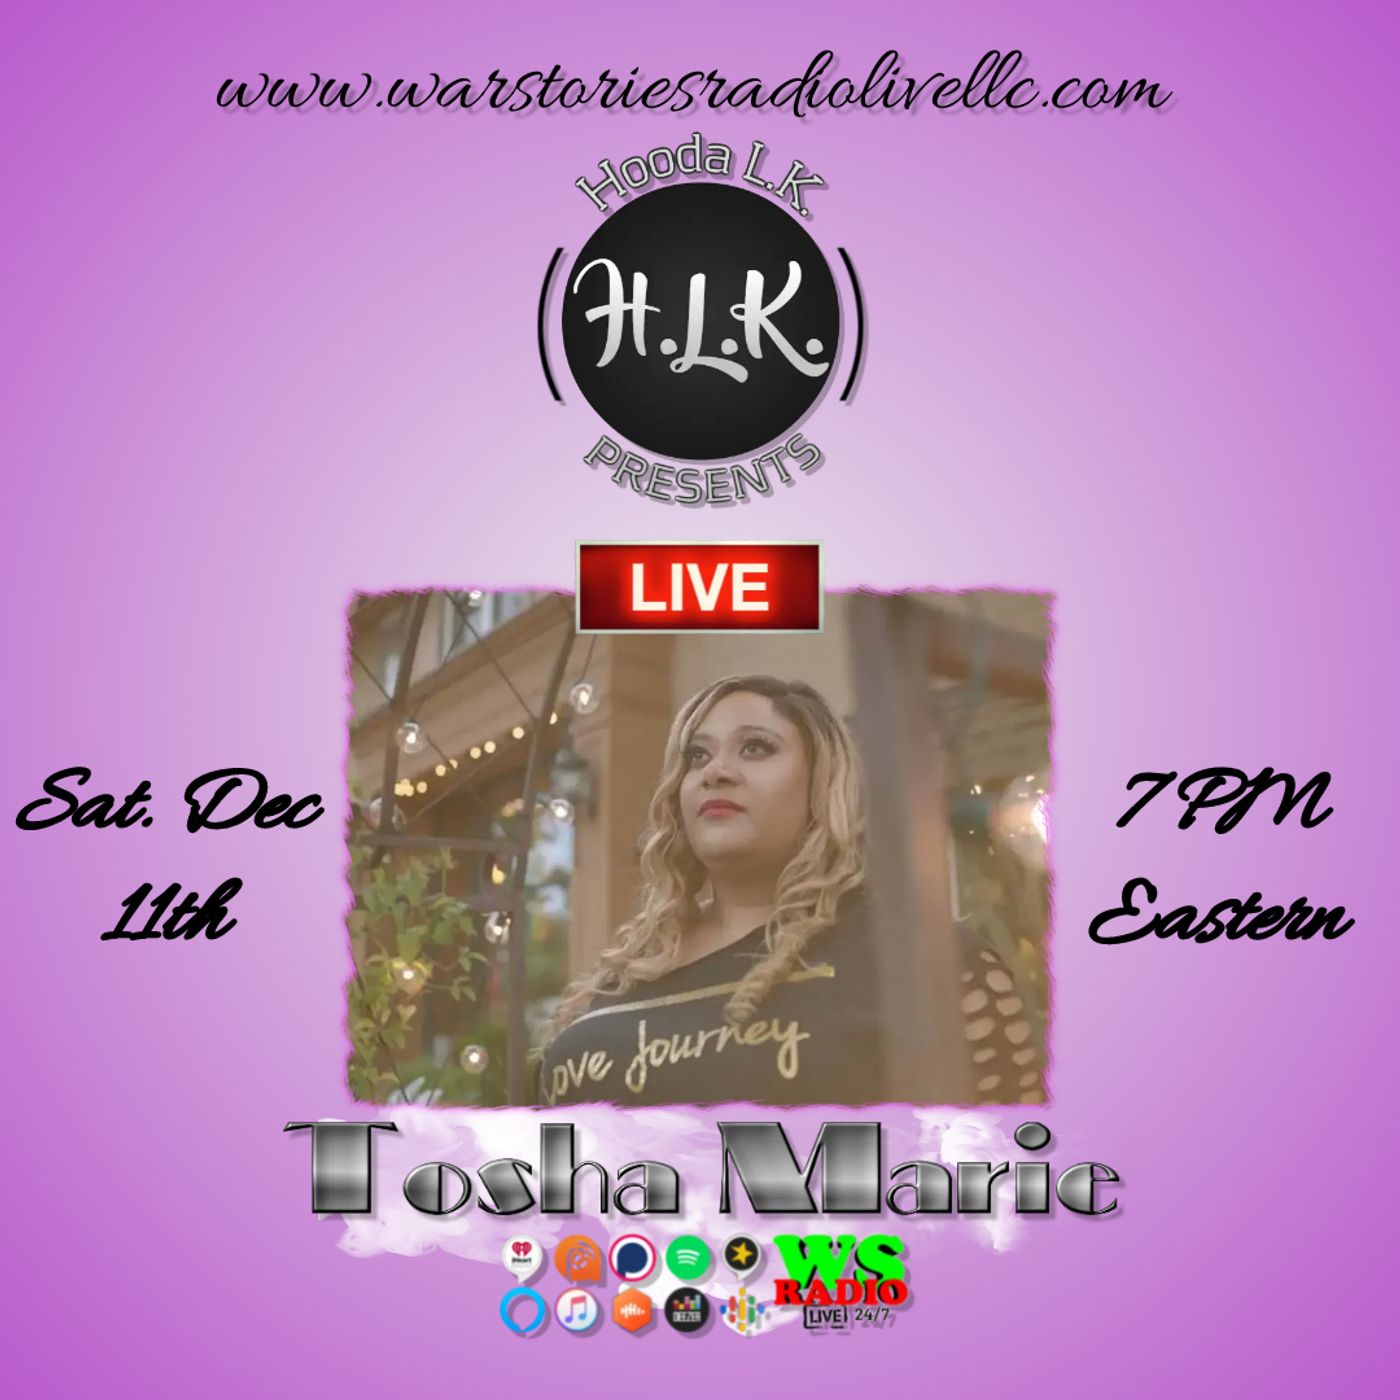 Hooda LK Presents | Tosha Marie